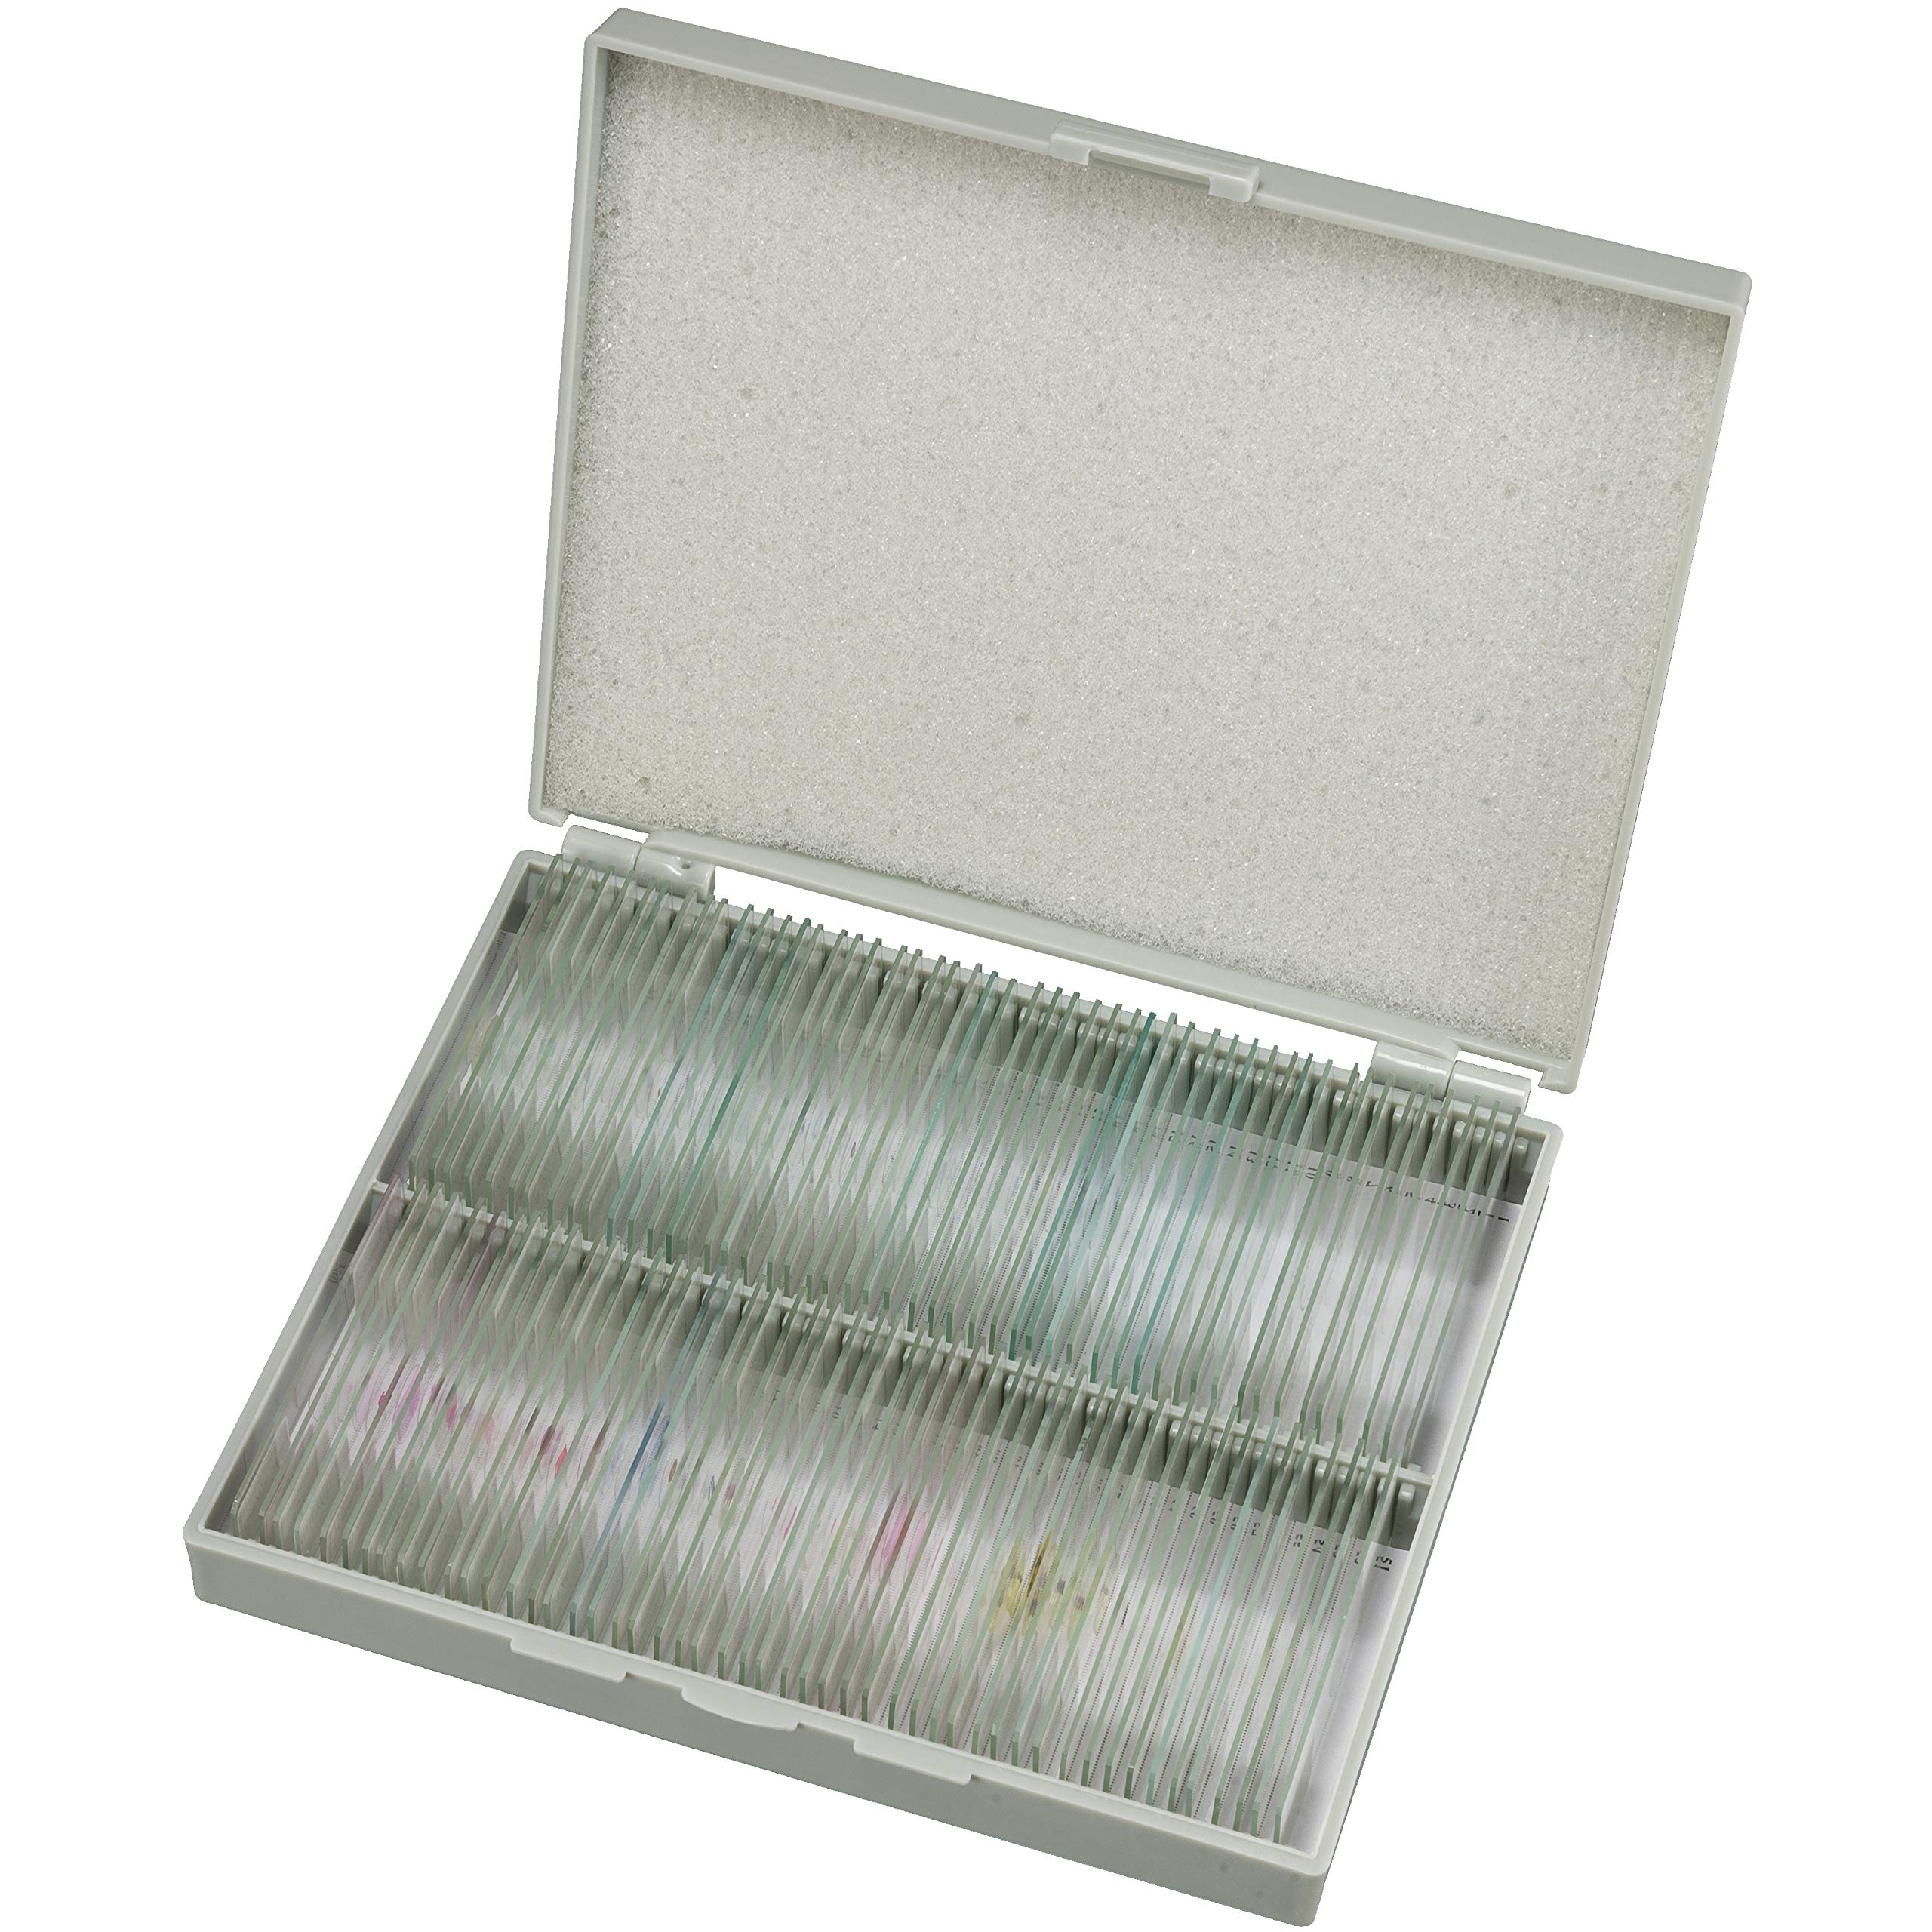 Bresser Mikroskop Dauerpräparate, 100 Glas-Objektträger mit gefärbten Präparaten aus der Biologie, für Hobby, Schule und Unterricht